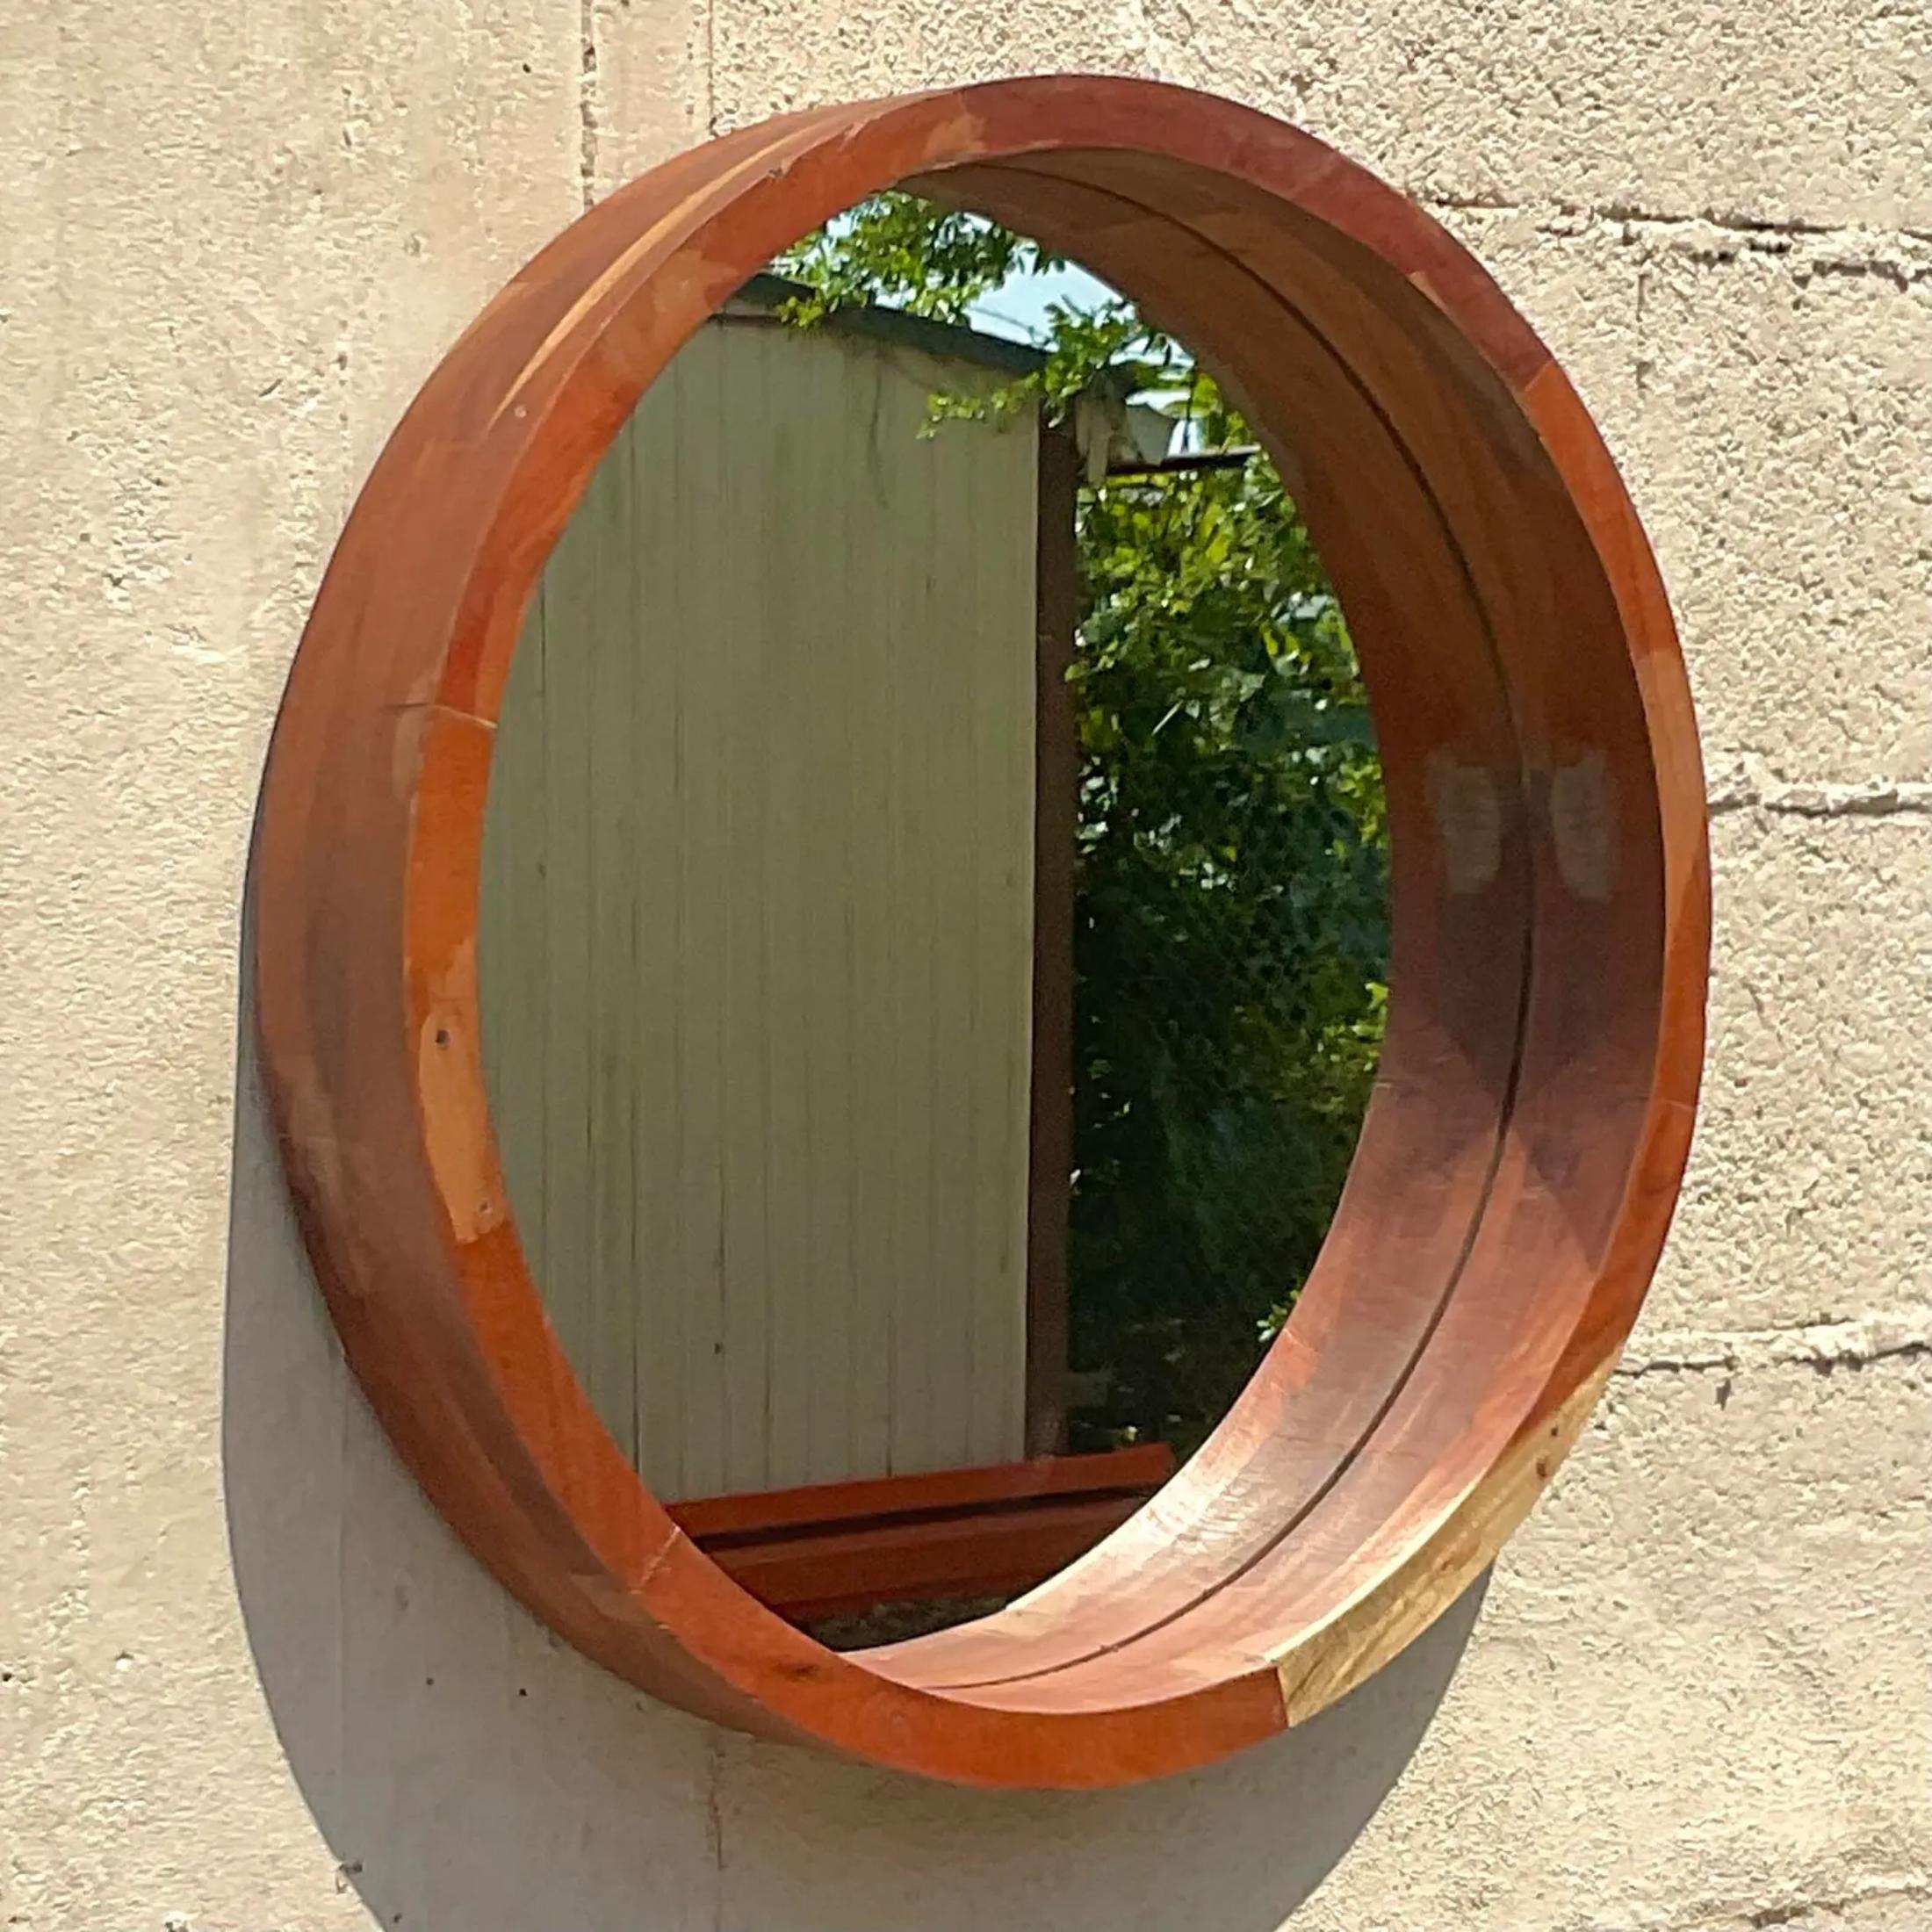 Un fabuleux miroir rond en bois Boho vintage. Magnifique grain de bois dans un design contemporain épuré. Acquis d'une succession de Palm Beach